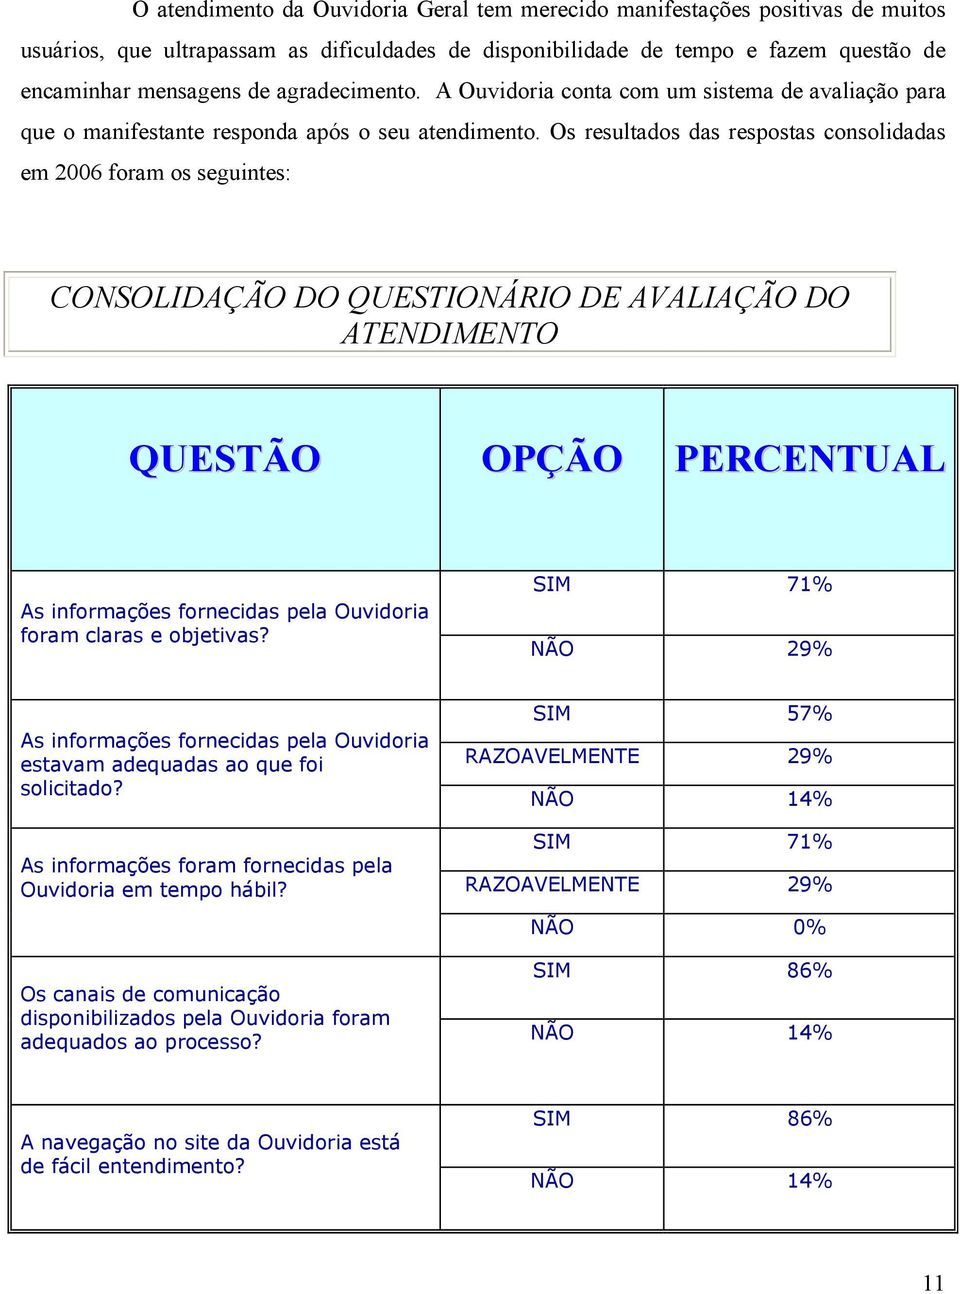 Os resultados das respostas consolidadas em 2006 foram os seguintes: CONSOLIDAÇÃO DO QUESTIONÁRIO DE AVALIAÇÃO DO ATENDIMENTO QUESTÃO OPÇÃO PERCENTUAL As informações fornecidas pela Ouvidoria foram